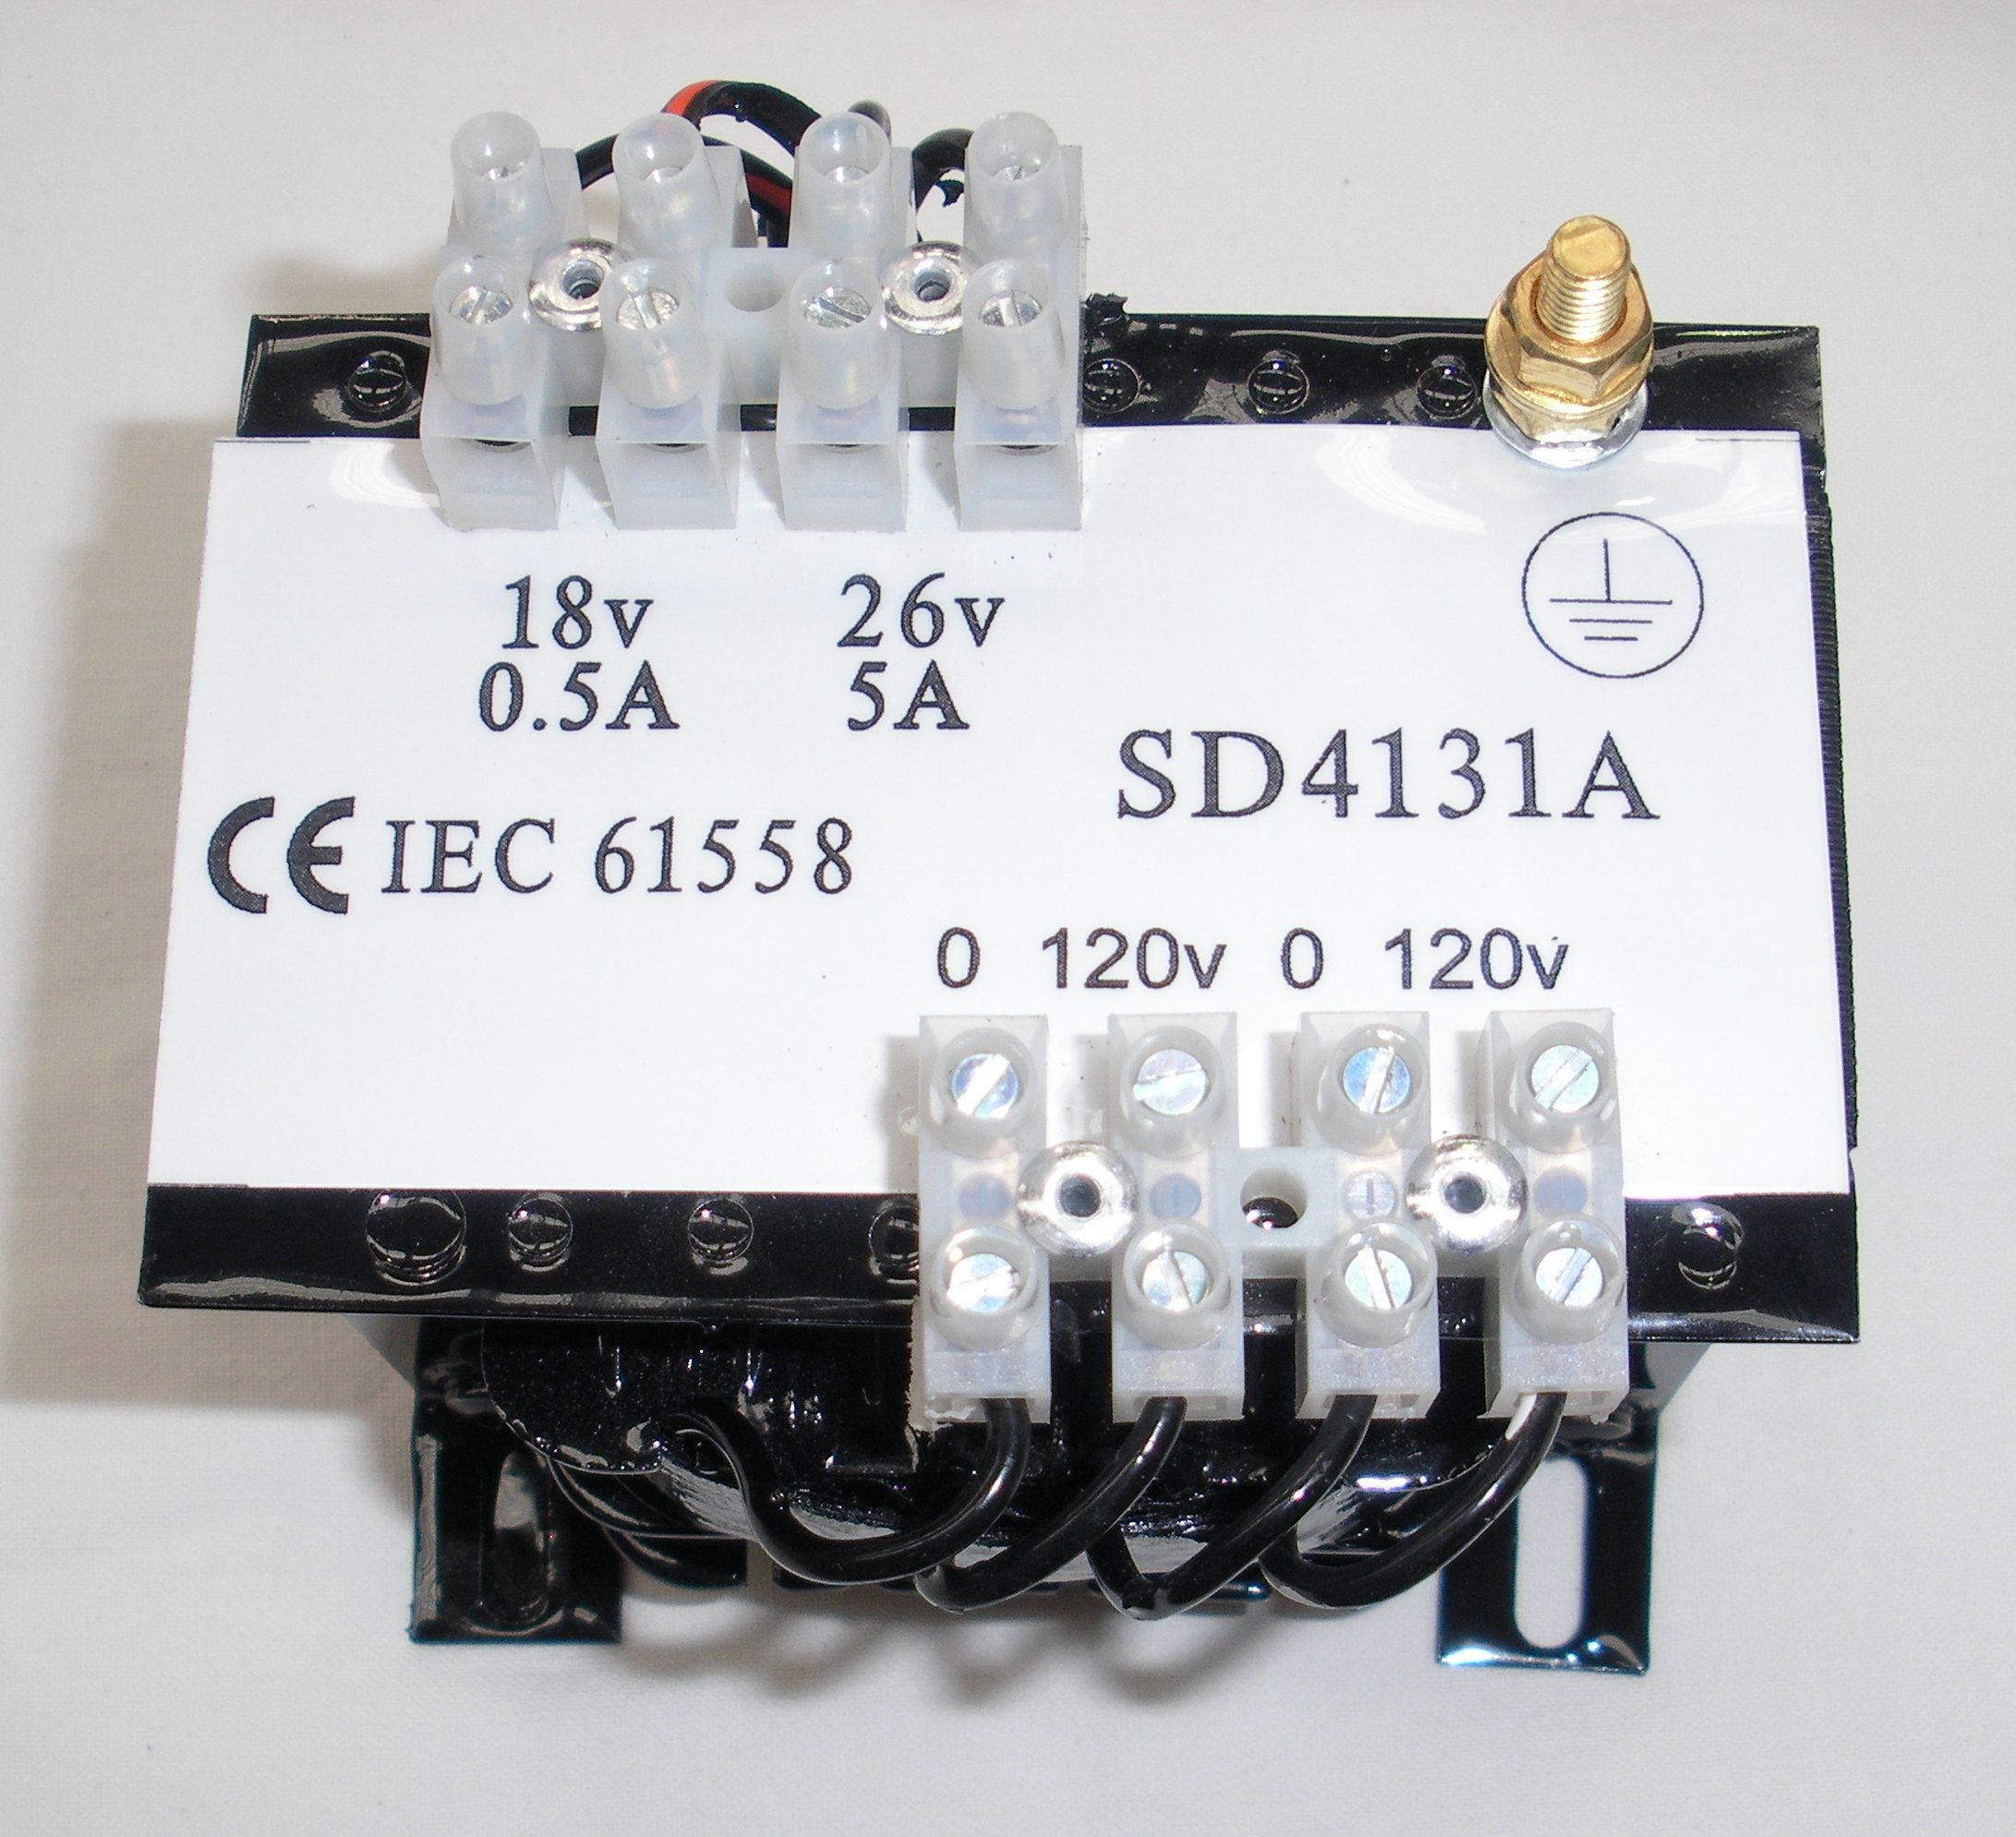 SD4131A Control TF